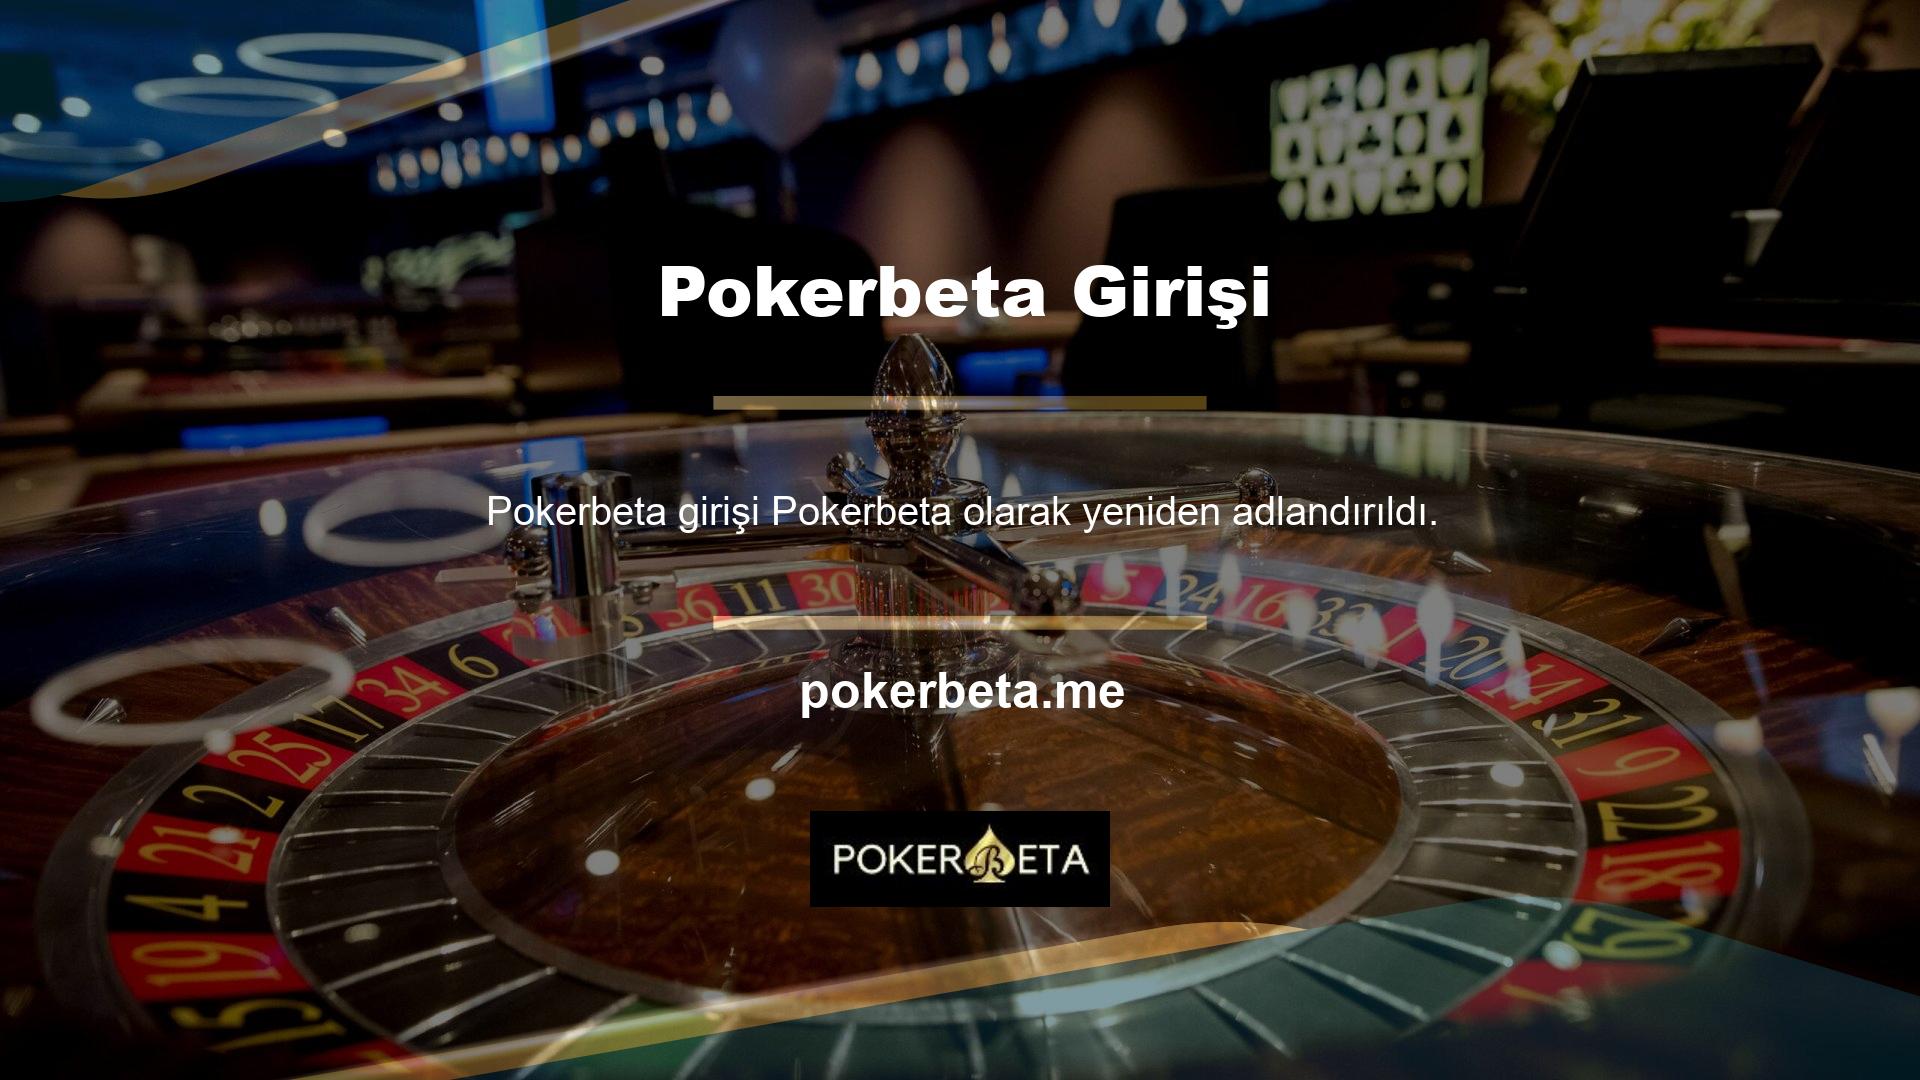 Pokerbeta web sitemizin URL'si üzerinden güvenle erişilebilir